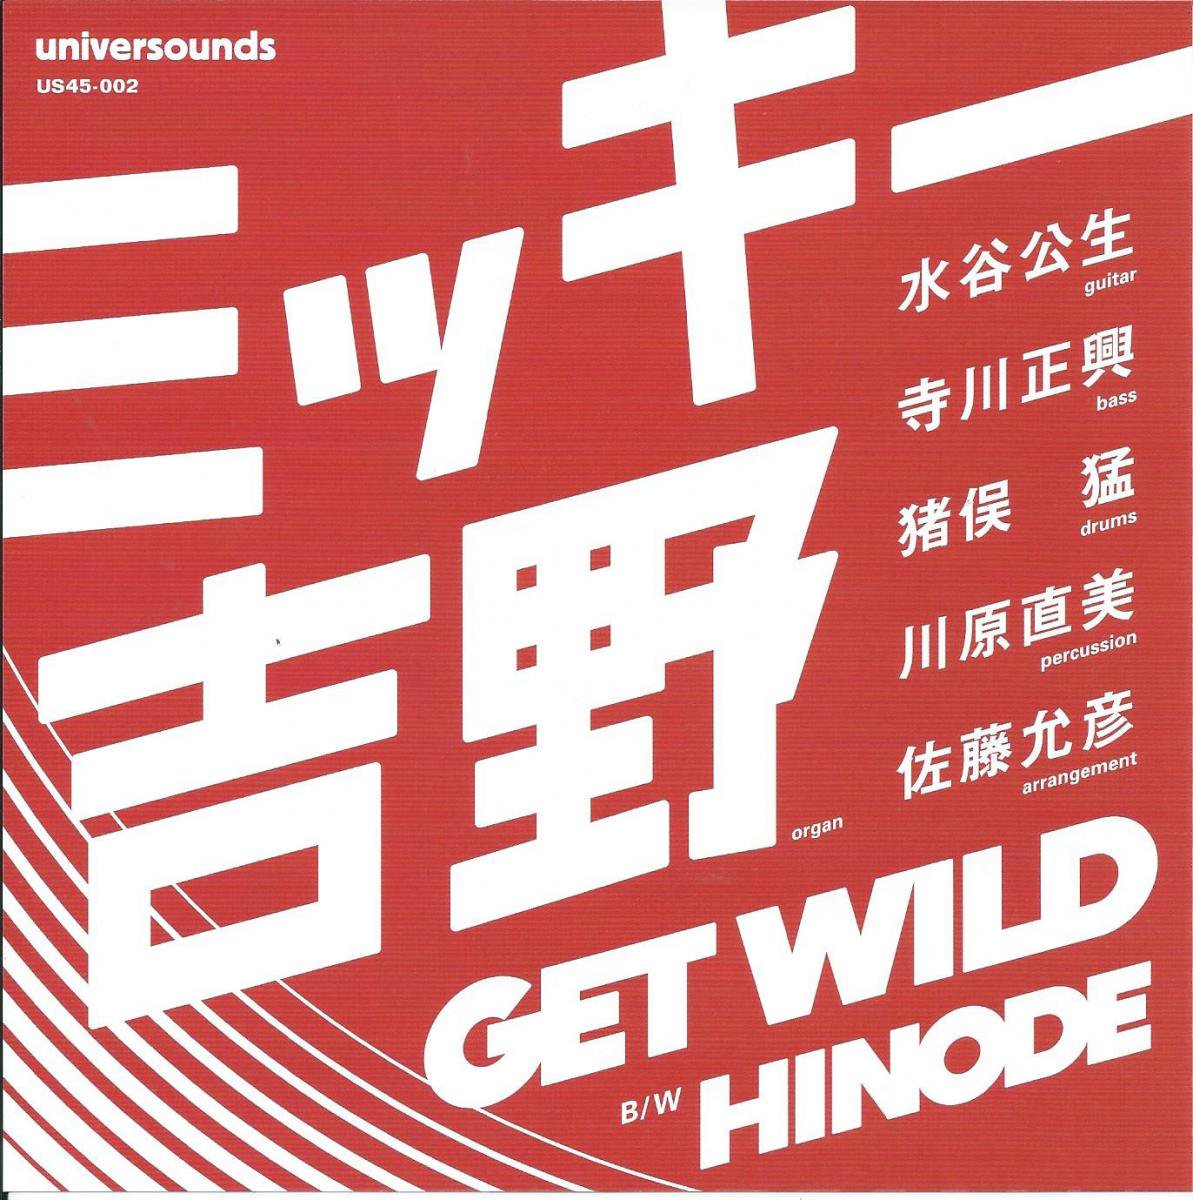 ミッキー吉野 MICKIE YOSHINO (猪俣猛 / TAKESHI INOMATA) / GET WILD / HINODE (7